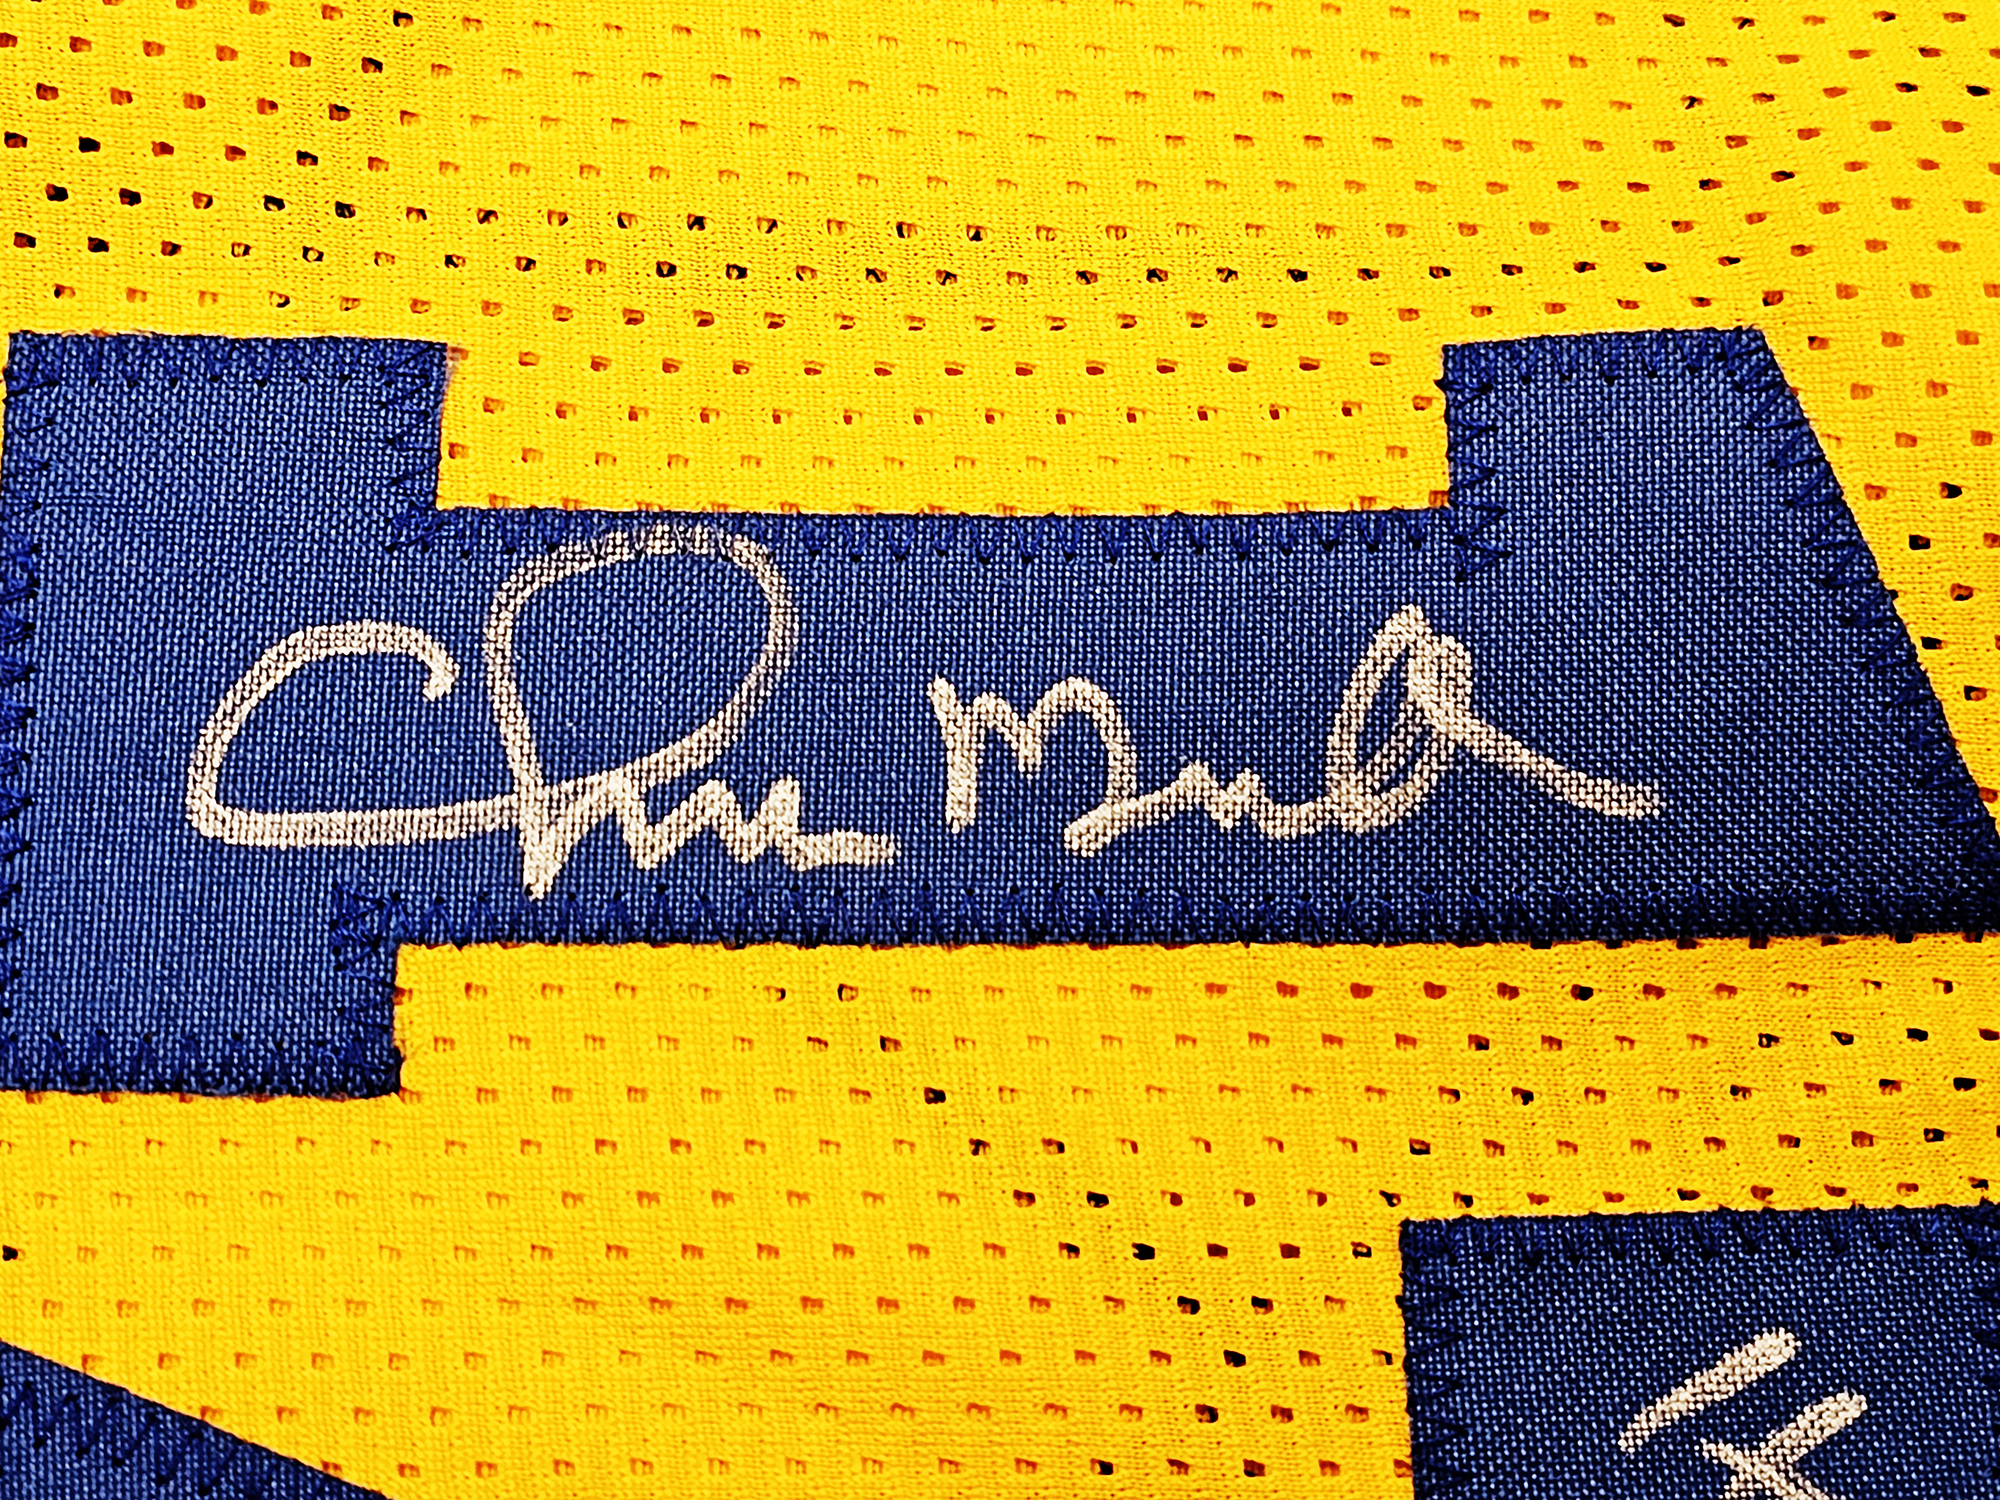 Golden State Warriors Chris Mullin, Tim Hardaway & Mitch Richmond Autographed Yellow Jersey Run TMC HOF Beckett BAS Witness